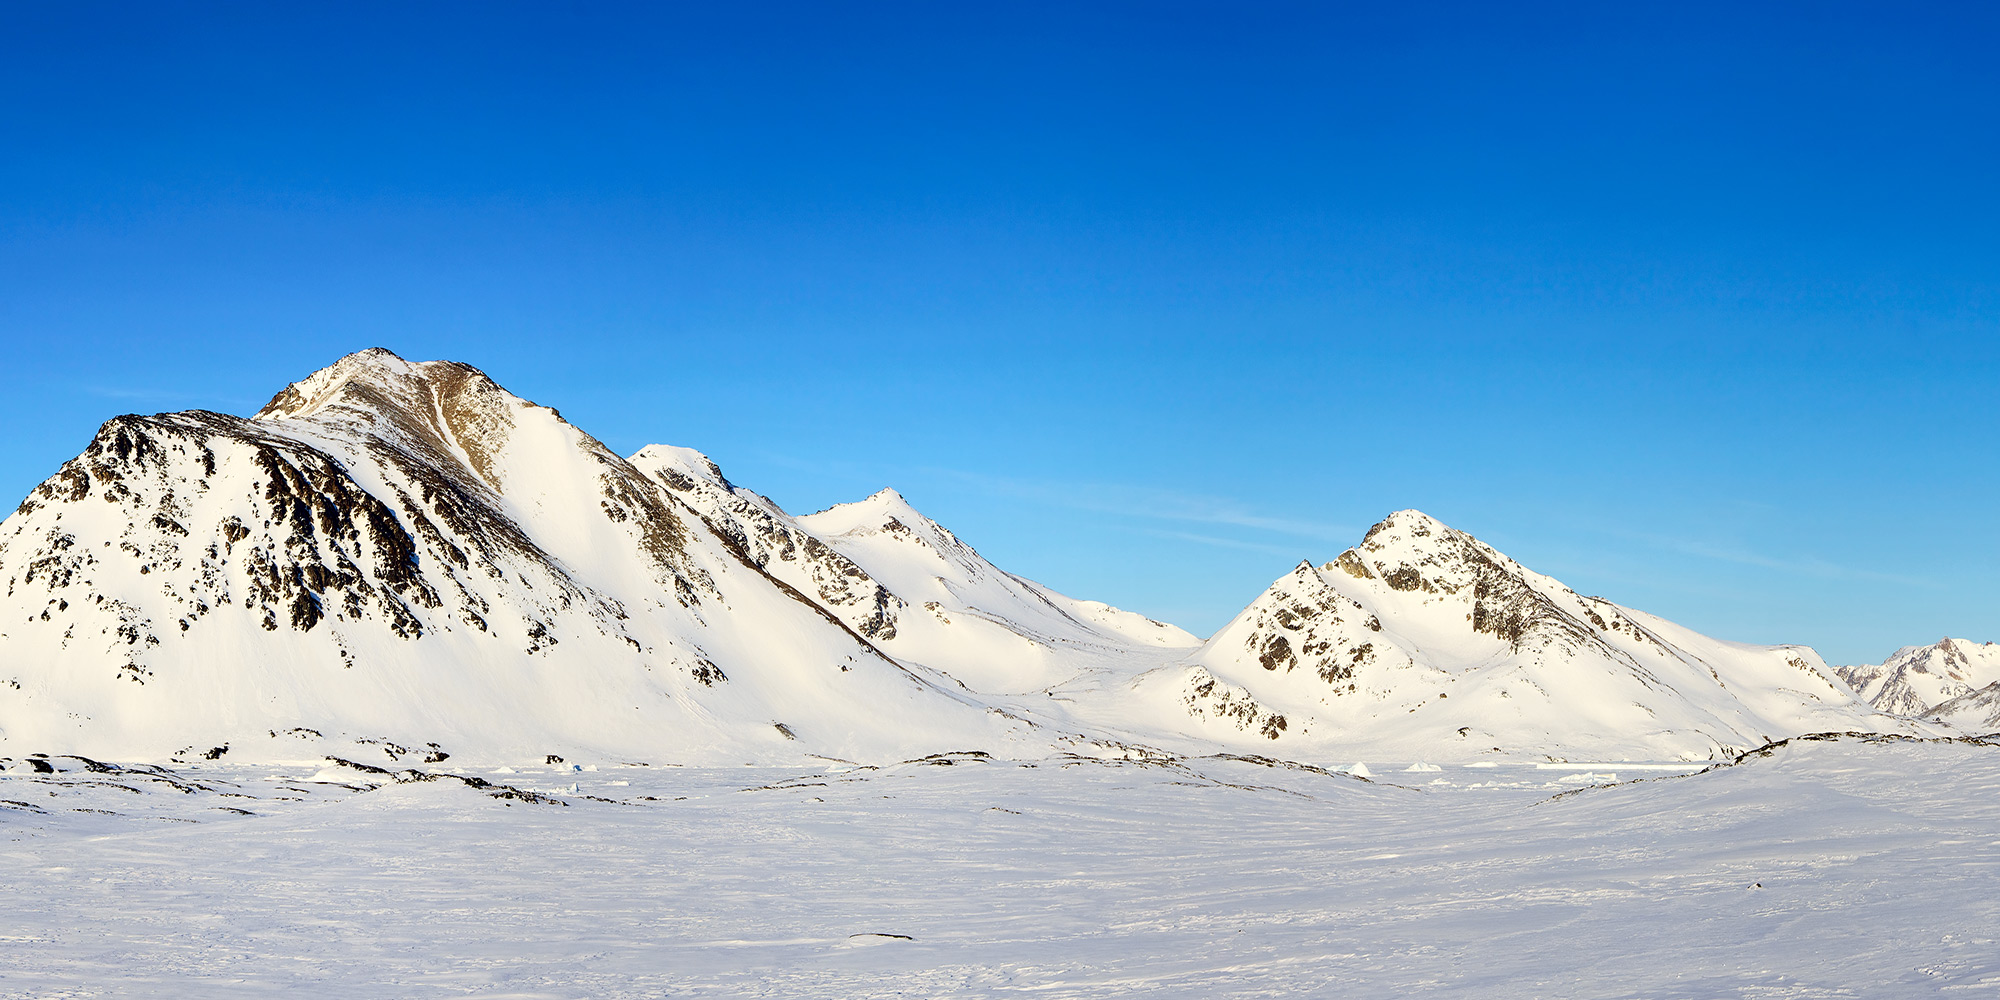 grønland landskab is sne - foredrag hos FOF Højskolen